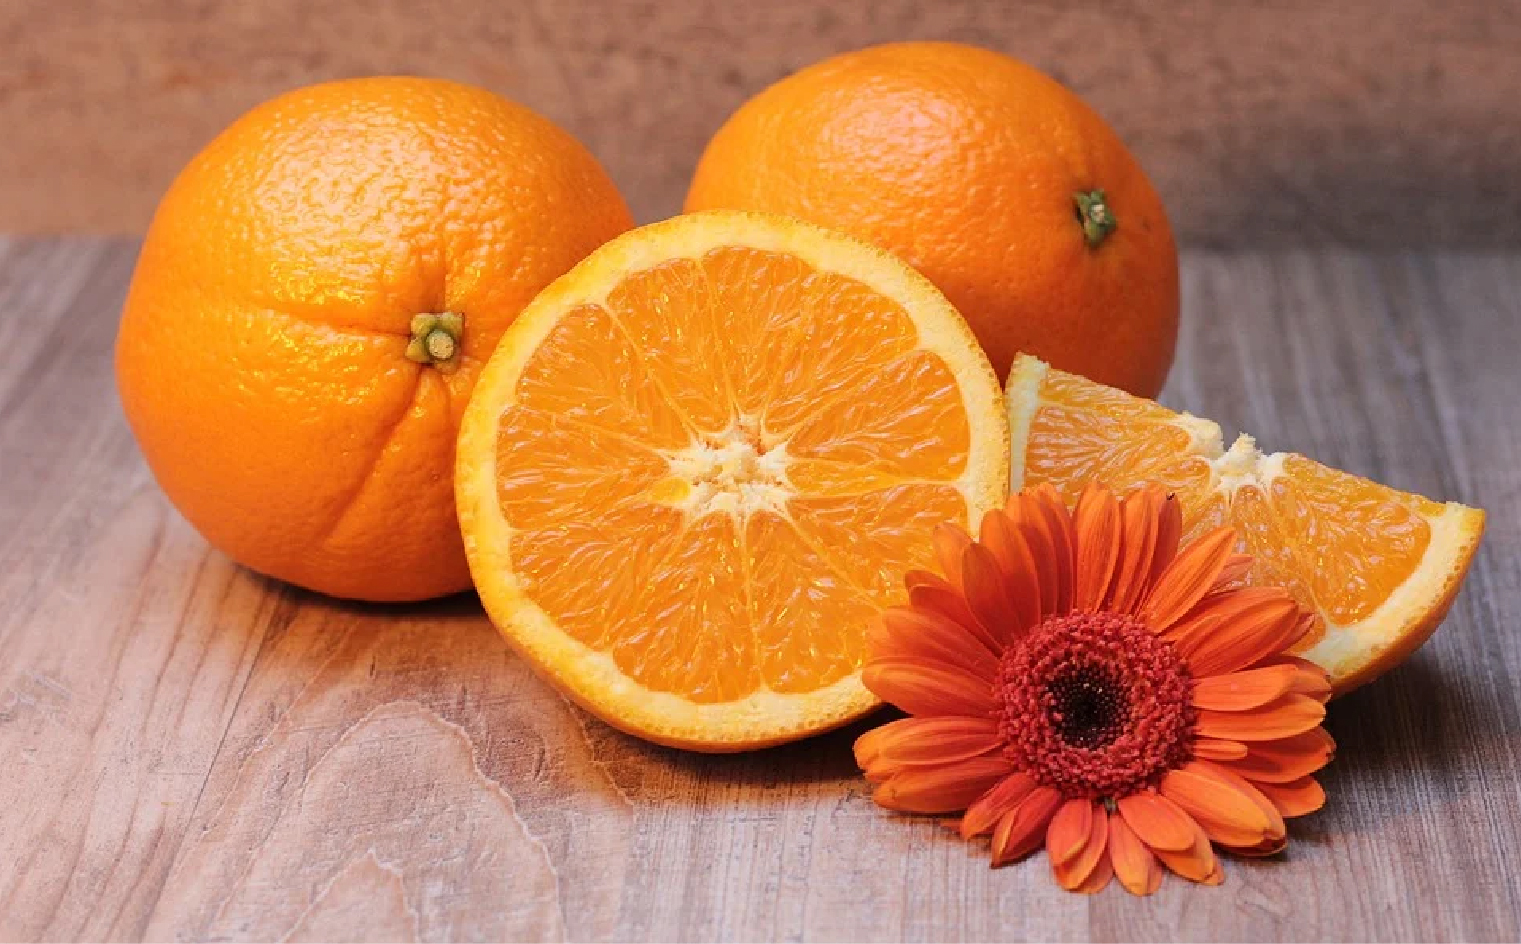 trái cây giàu vitamin C